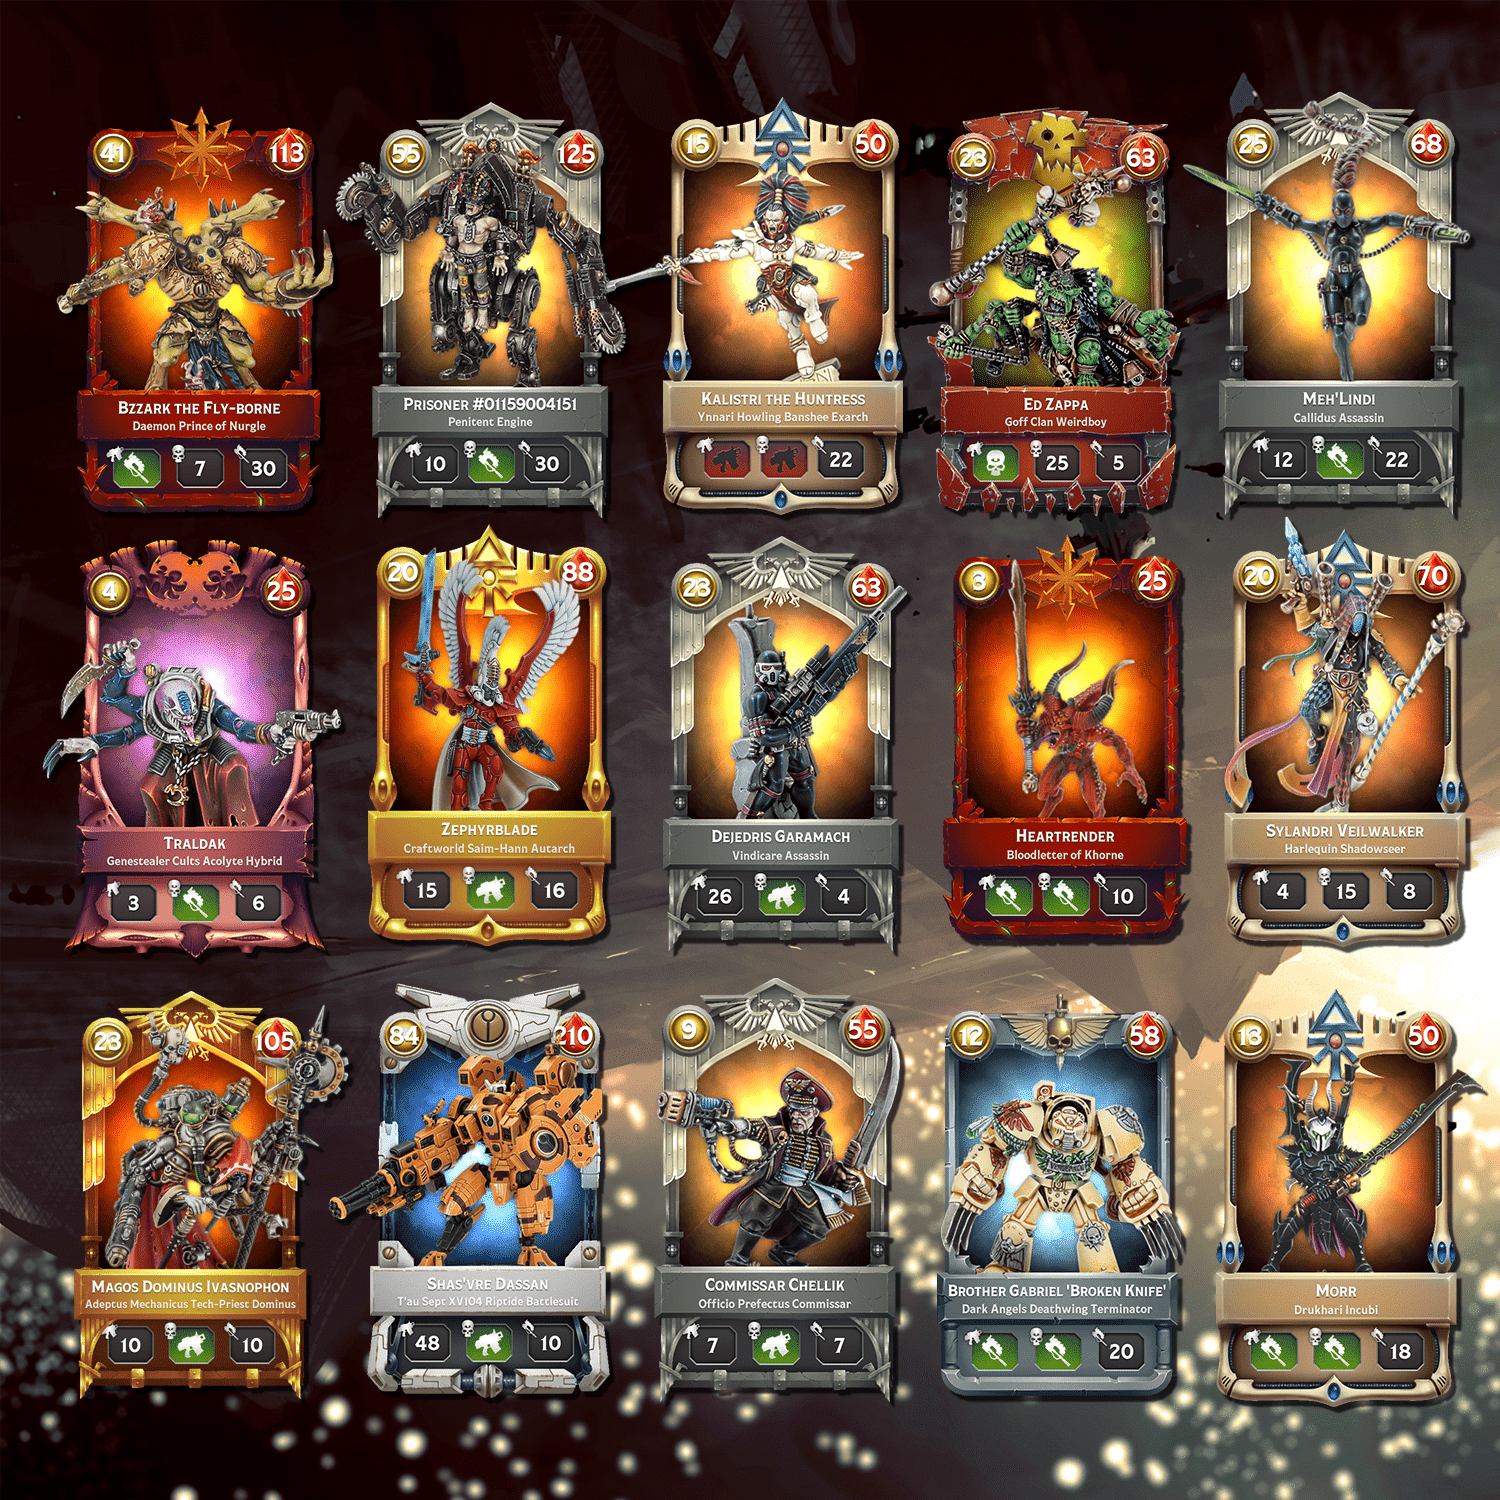 Warhammer Combat Cards. Warhammer 40000 Combat Cards колоды. Warhammer Combat Cards 40k Edition. Warhammer Combat Cards - 40k.